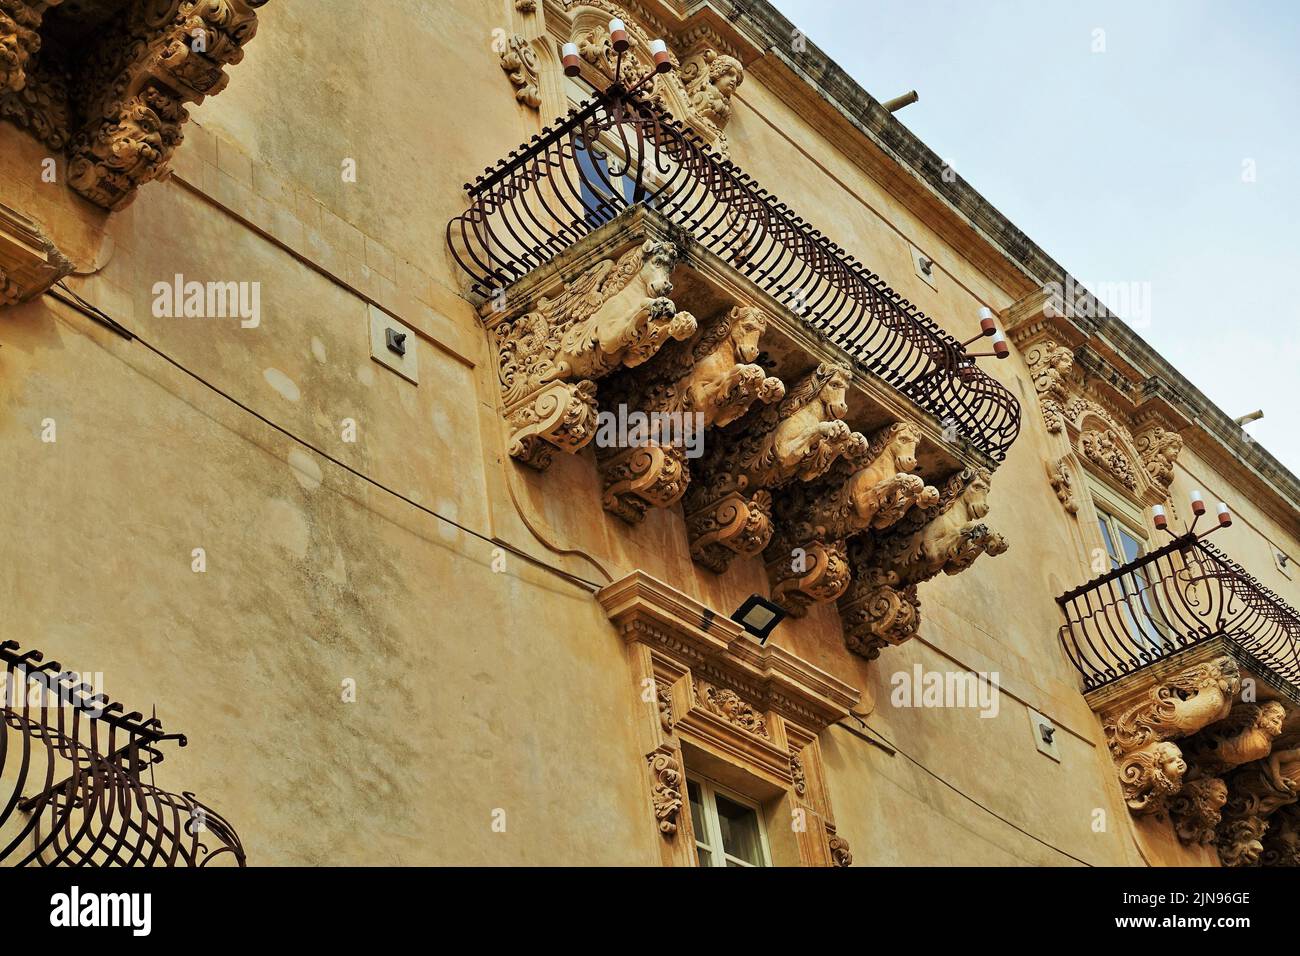 Old balcony, Palermo, Sicily, Italy, Europe Stock Photo